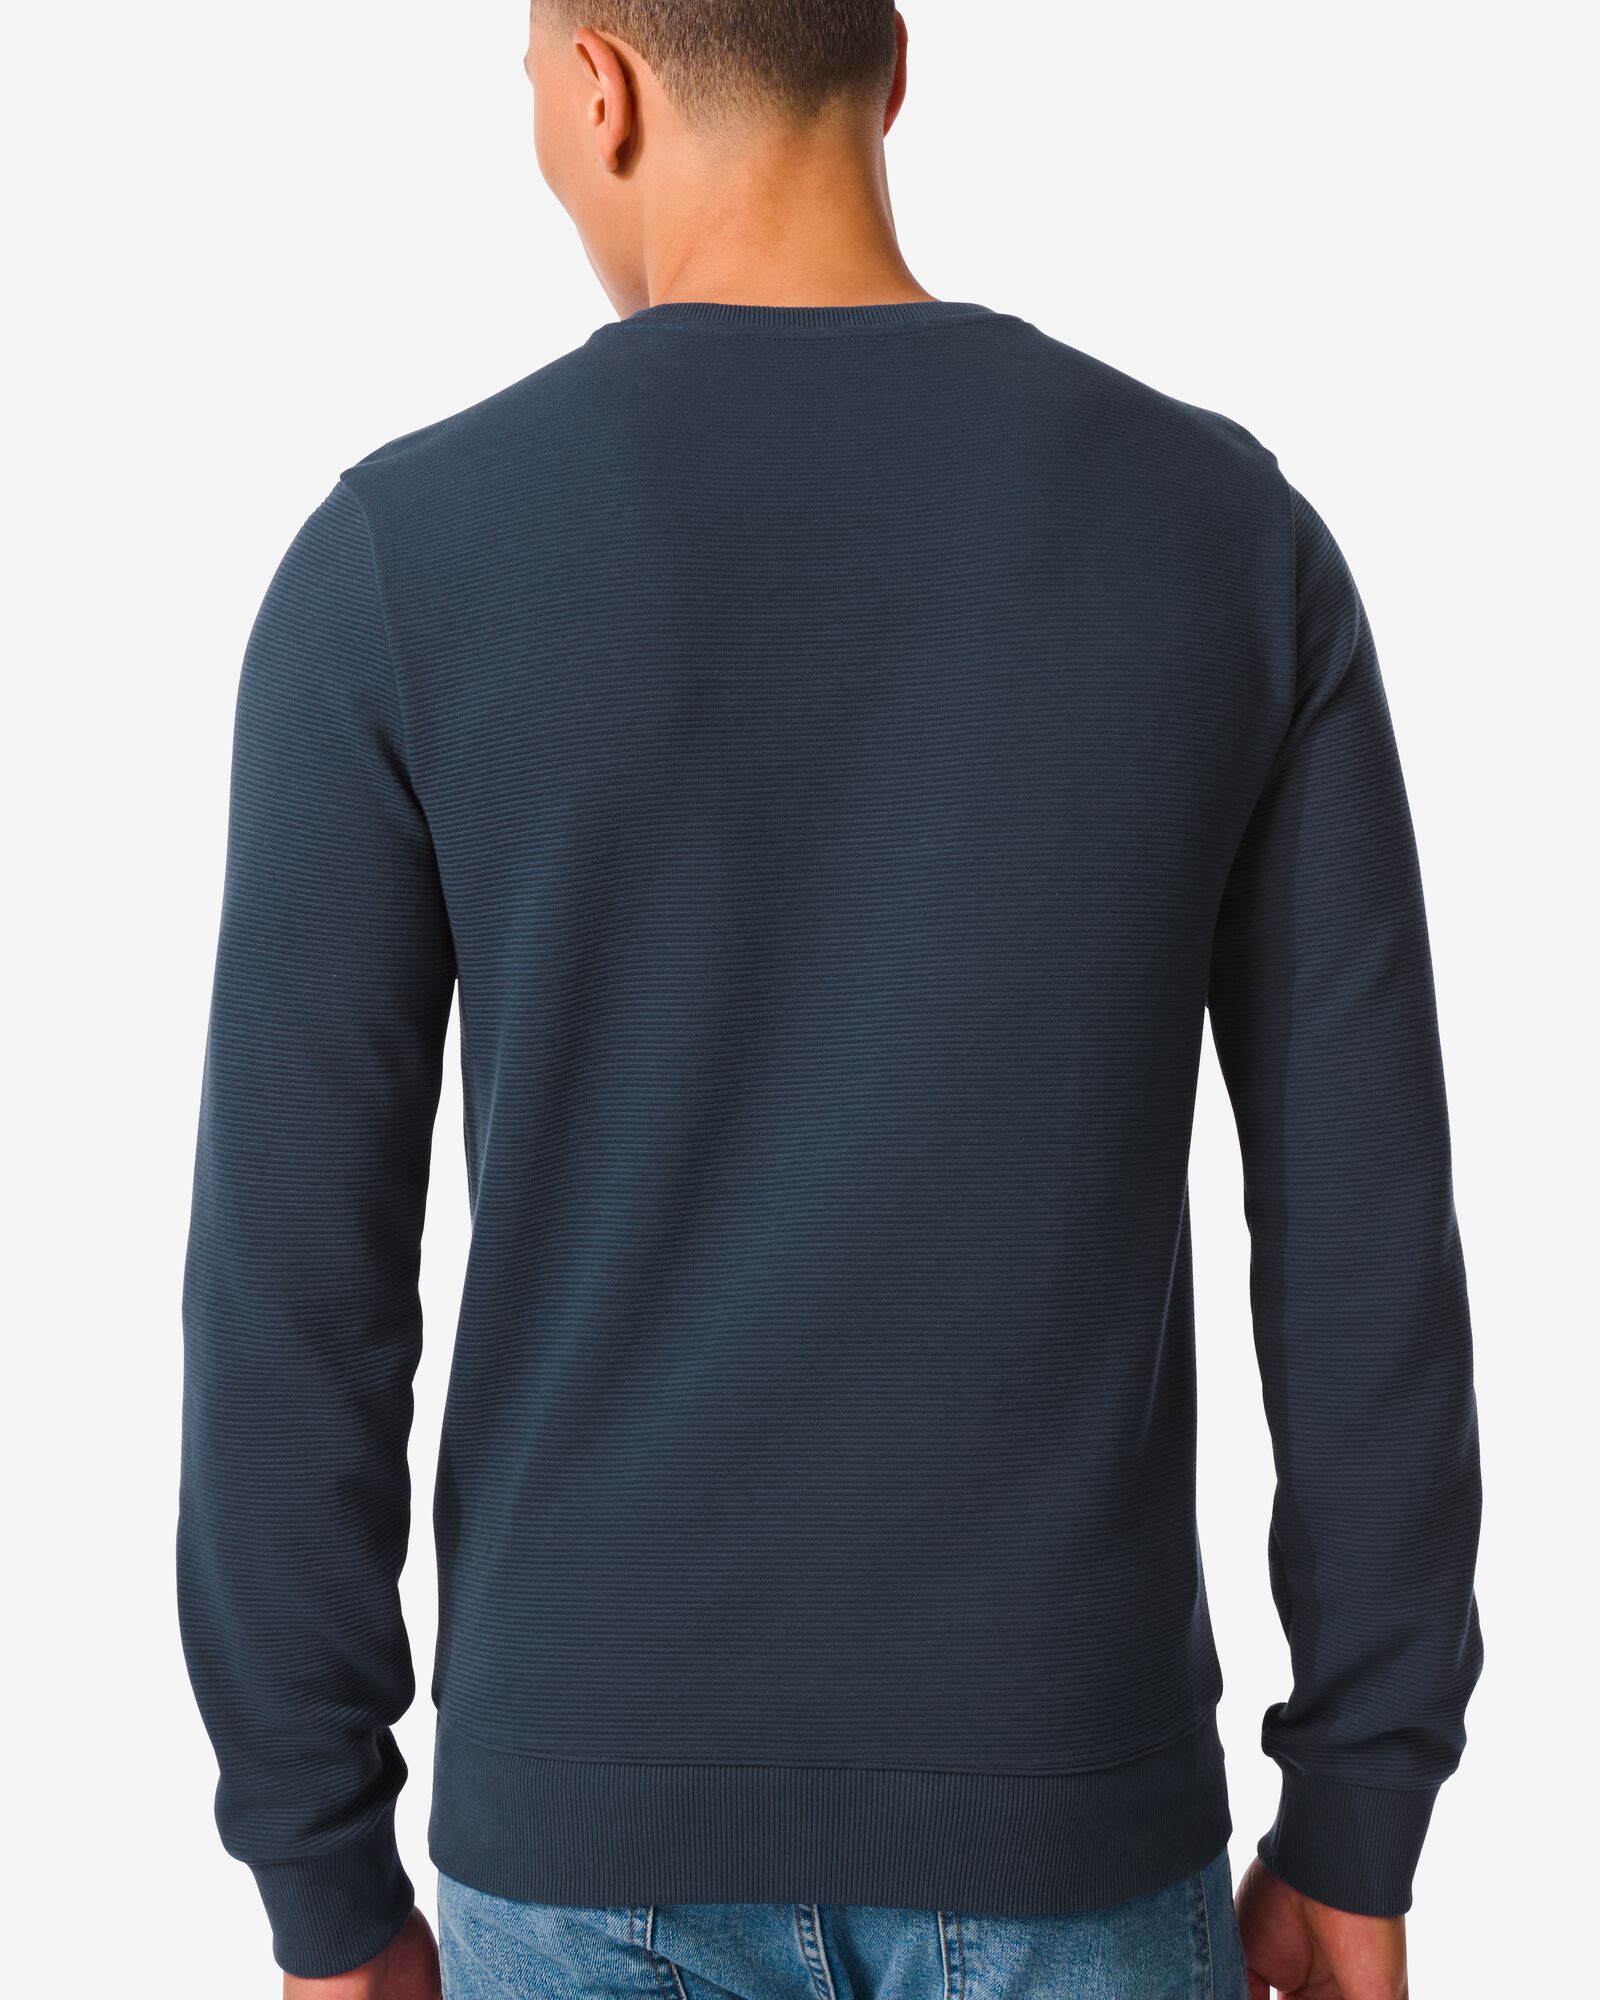 heren sweater ottoman blauw blauw - 2110640BLUE - HEMA